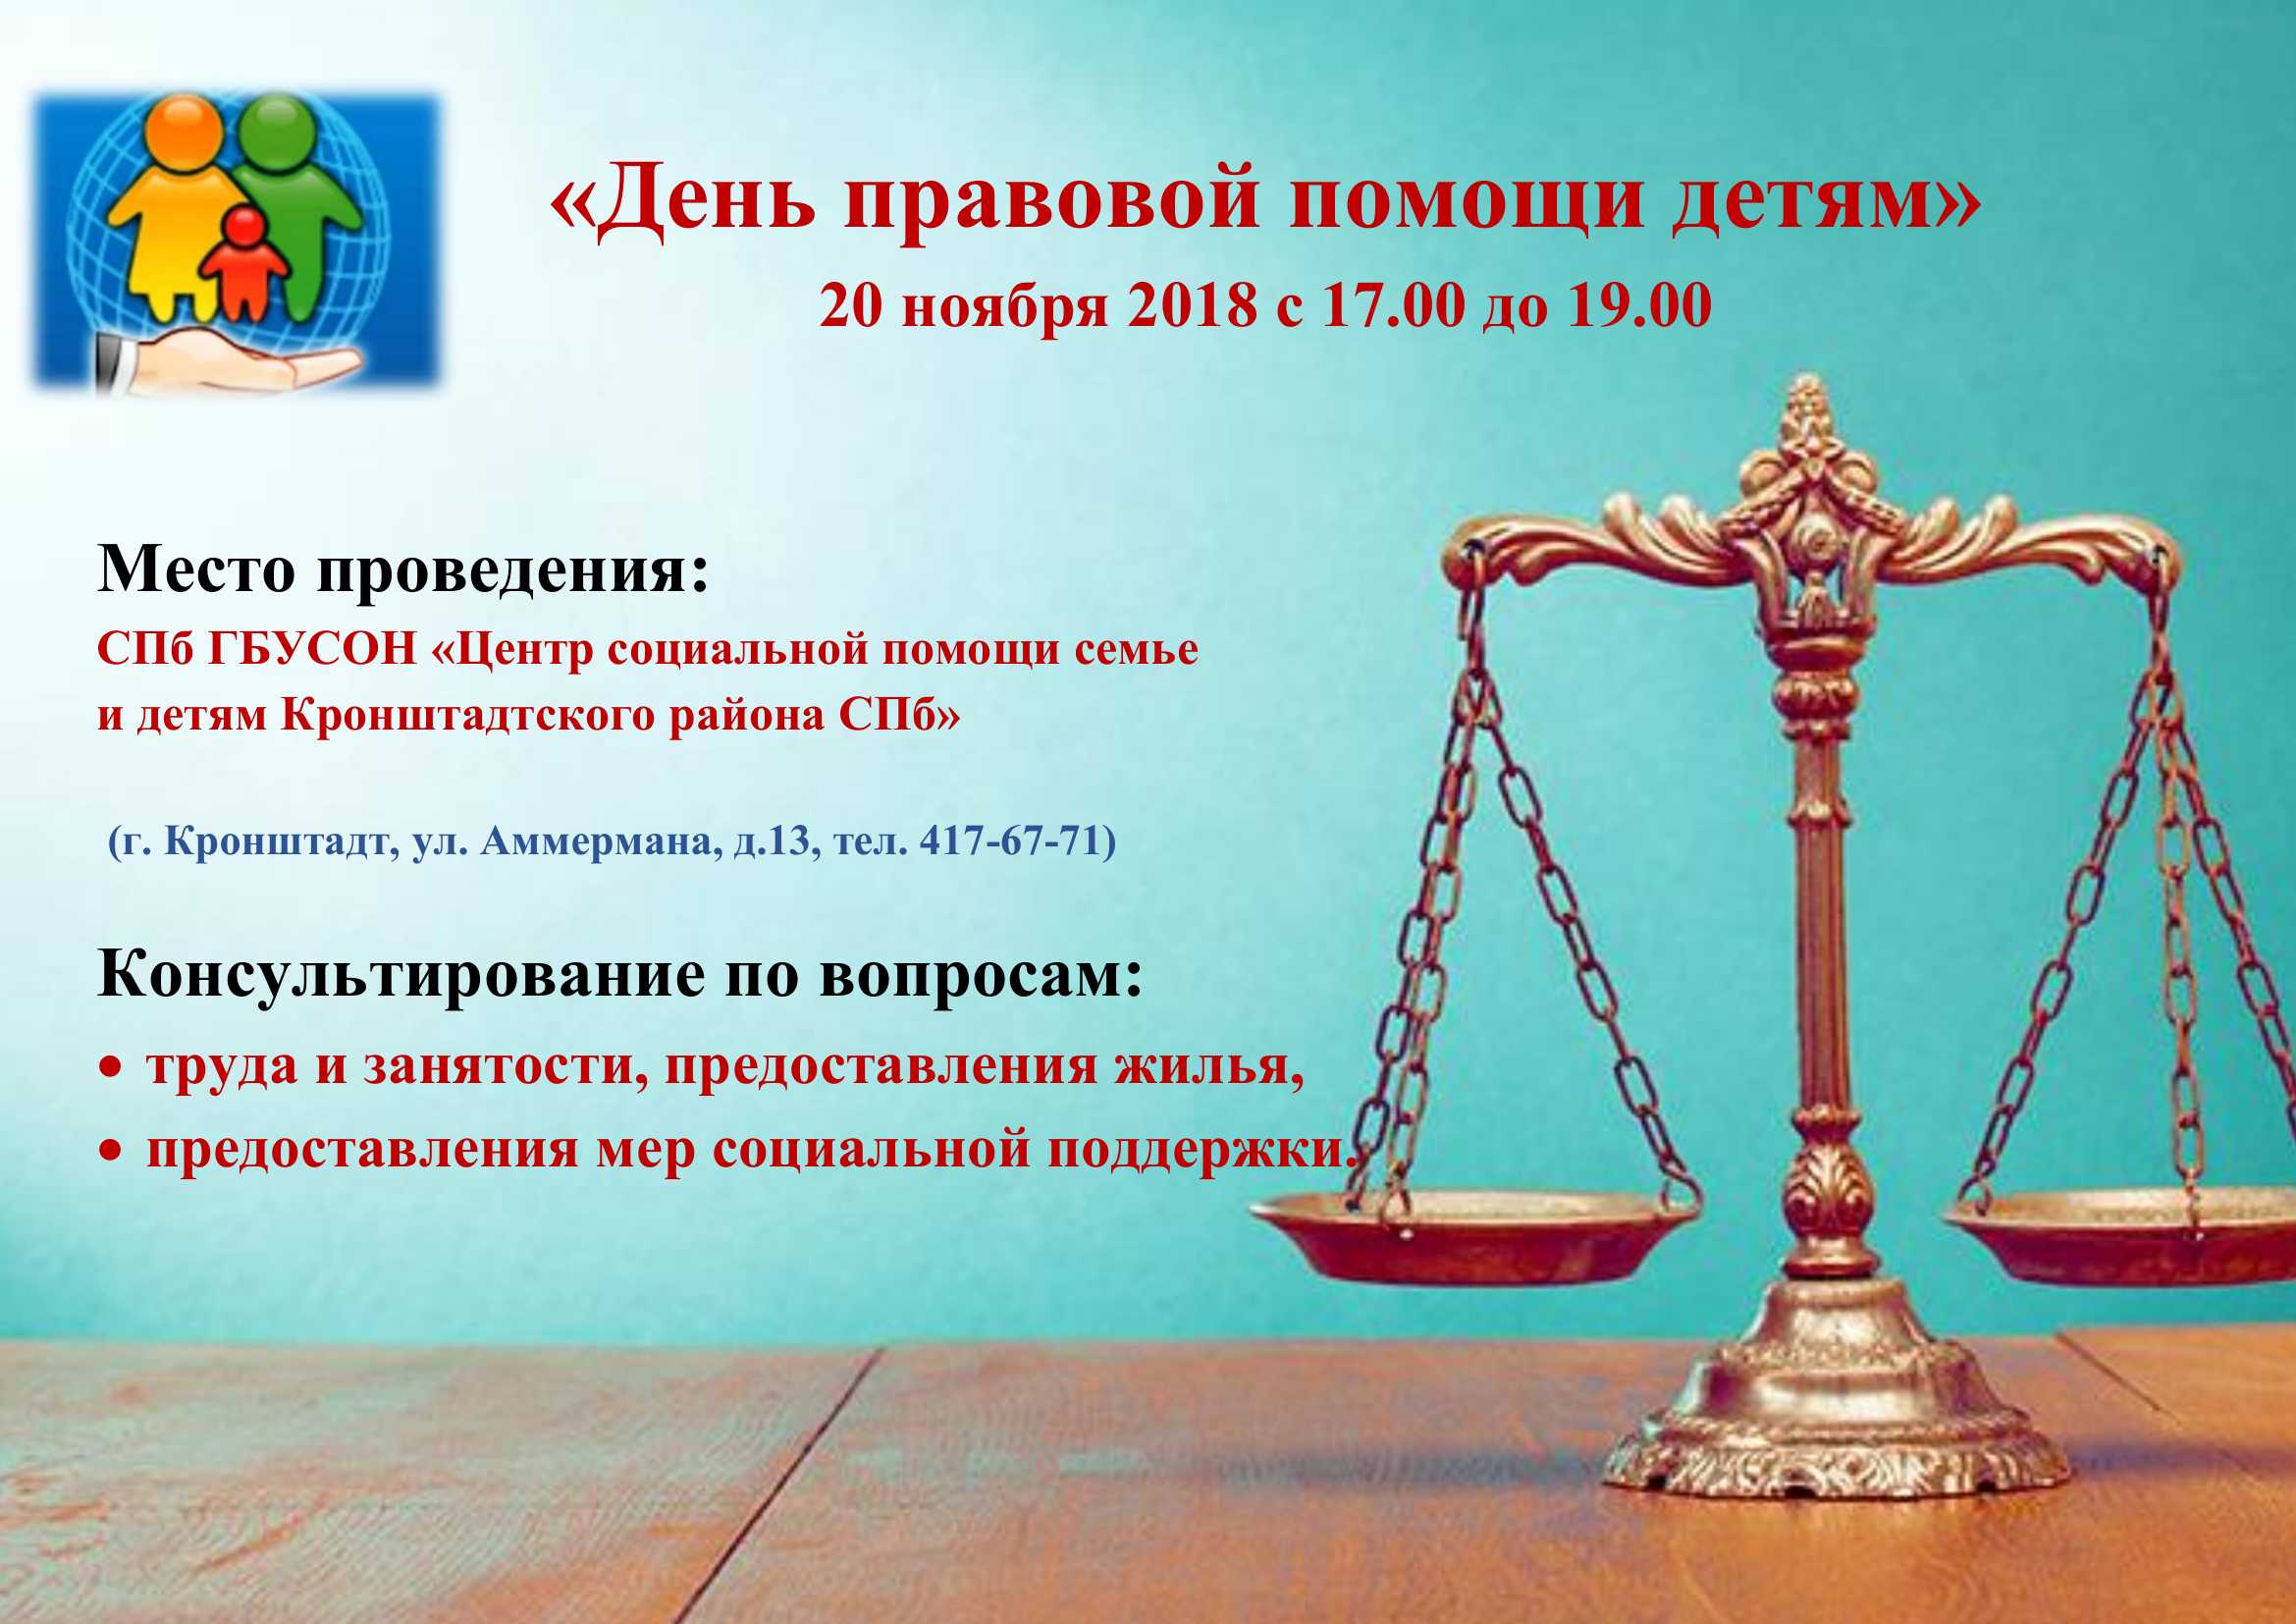 Всероссийская неделя правовой помощи